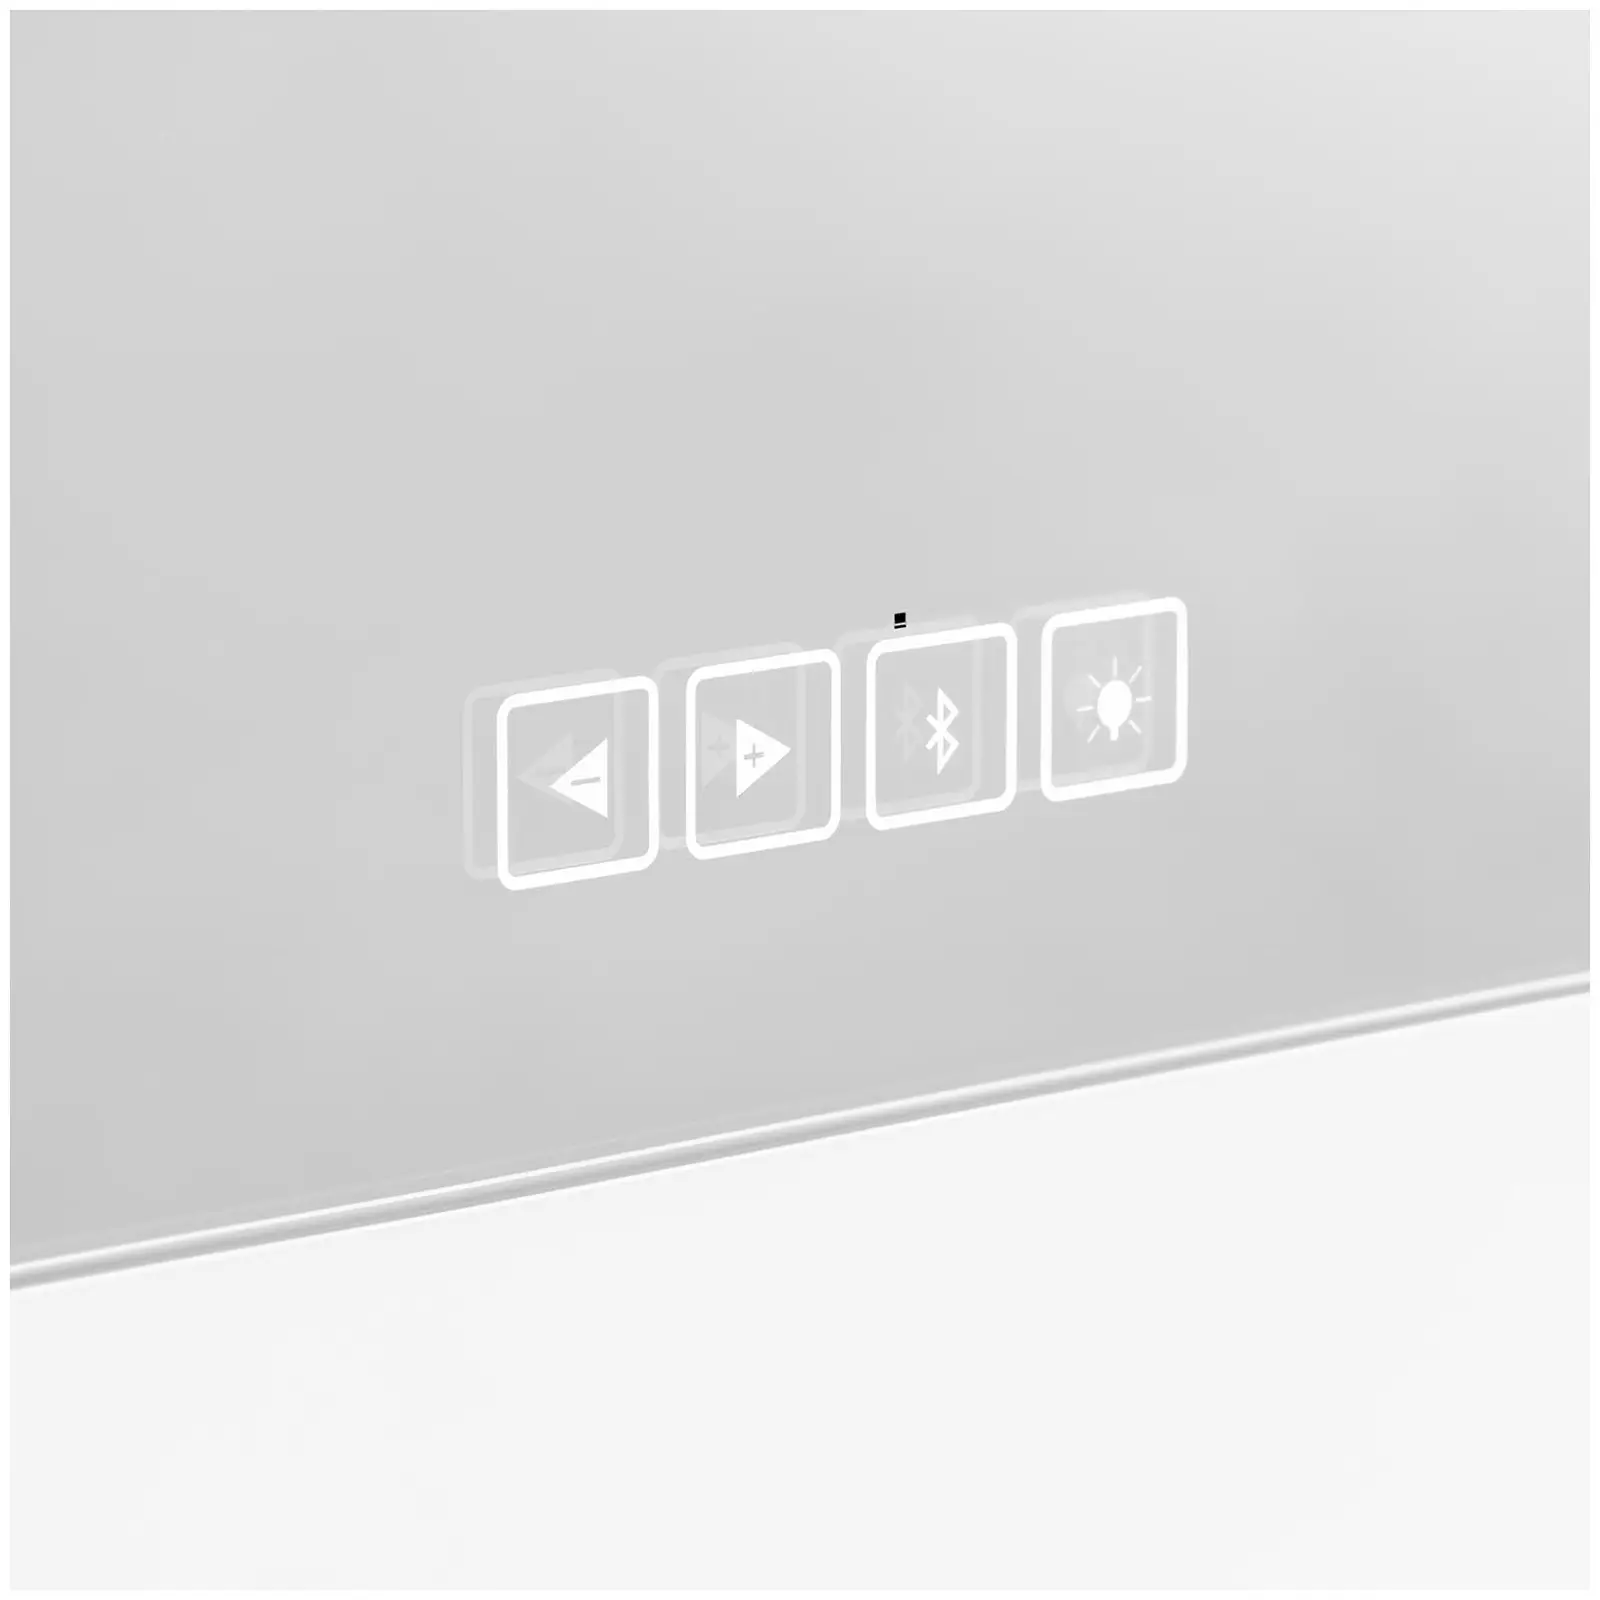 Hollywoodské zrcadlo - bílé - 14 LED diod - hranaté- reproduktor